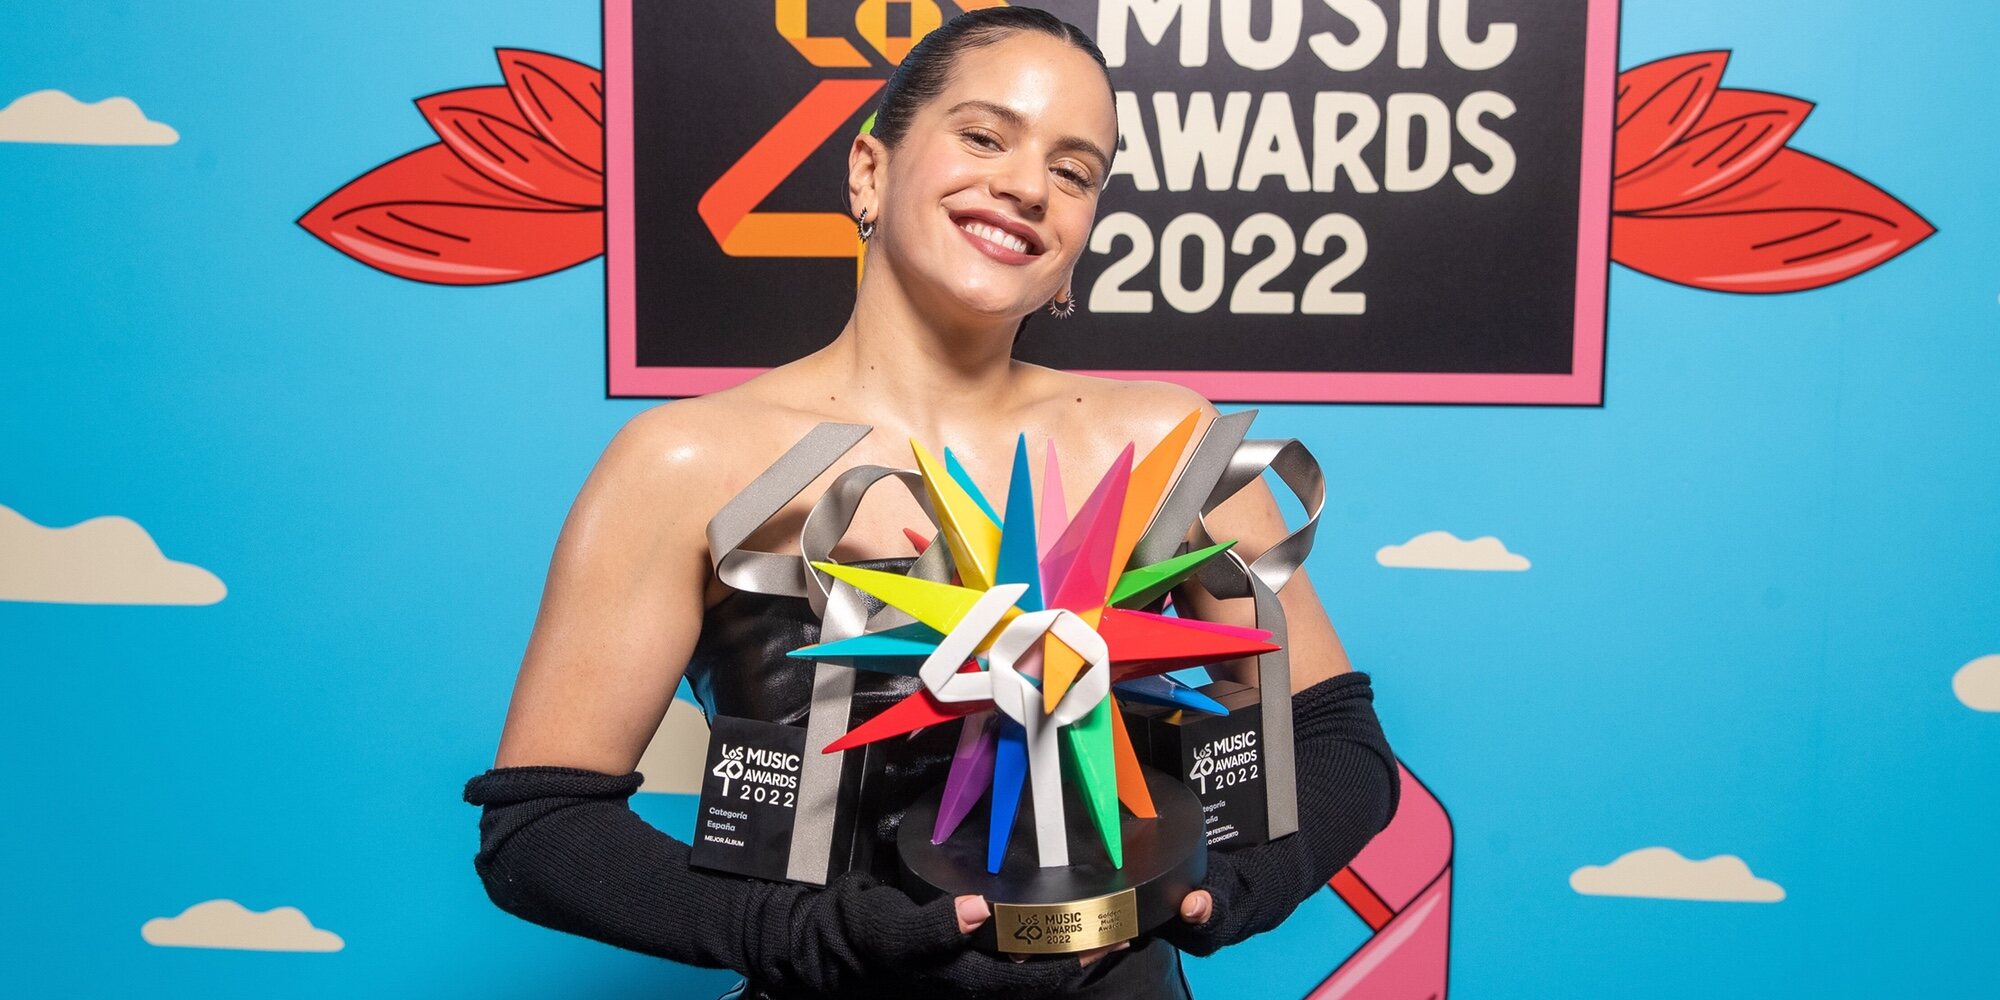 Los 40 Music Awards 2022: Rosalía triunfa en una noche de mucha música con perreo a Ayuso y emoción de Dani Fernández